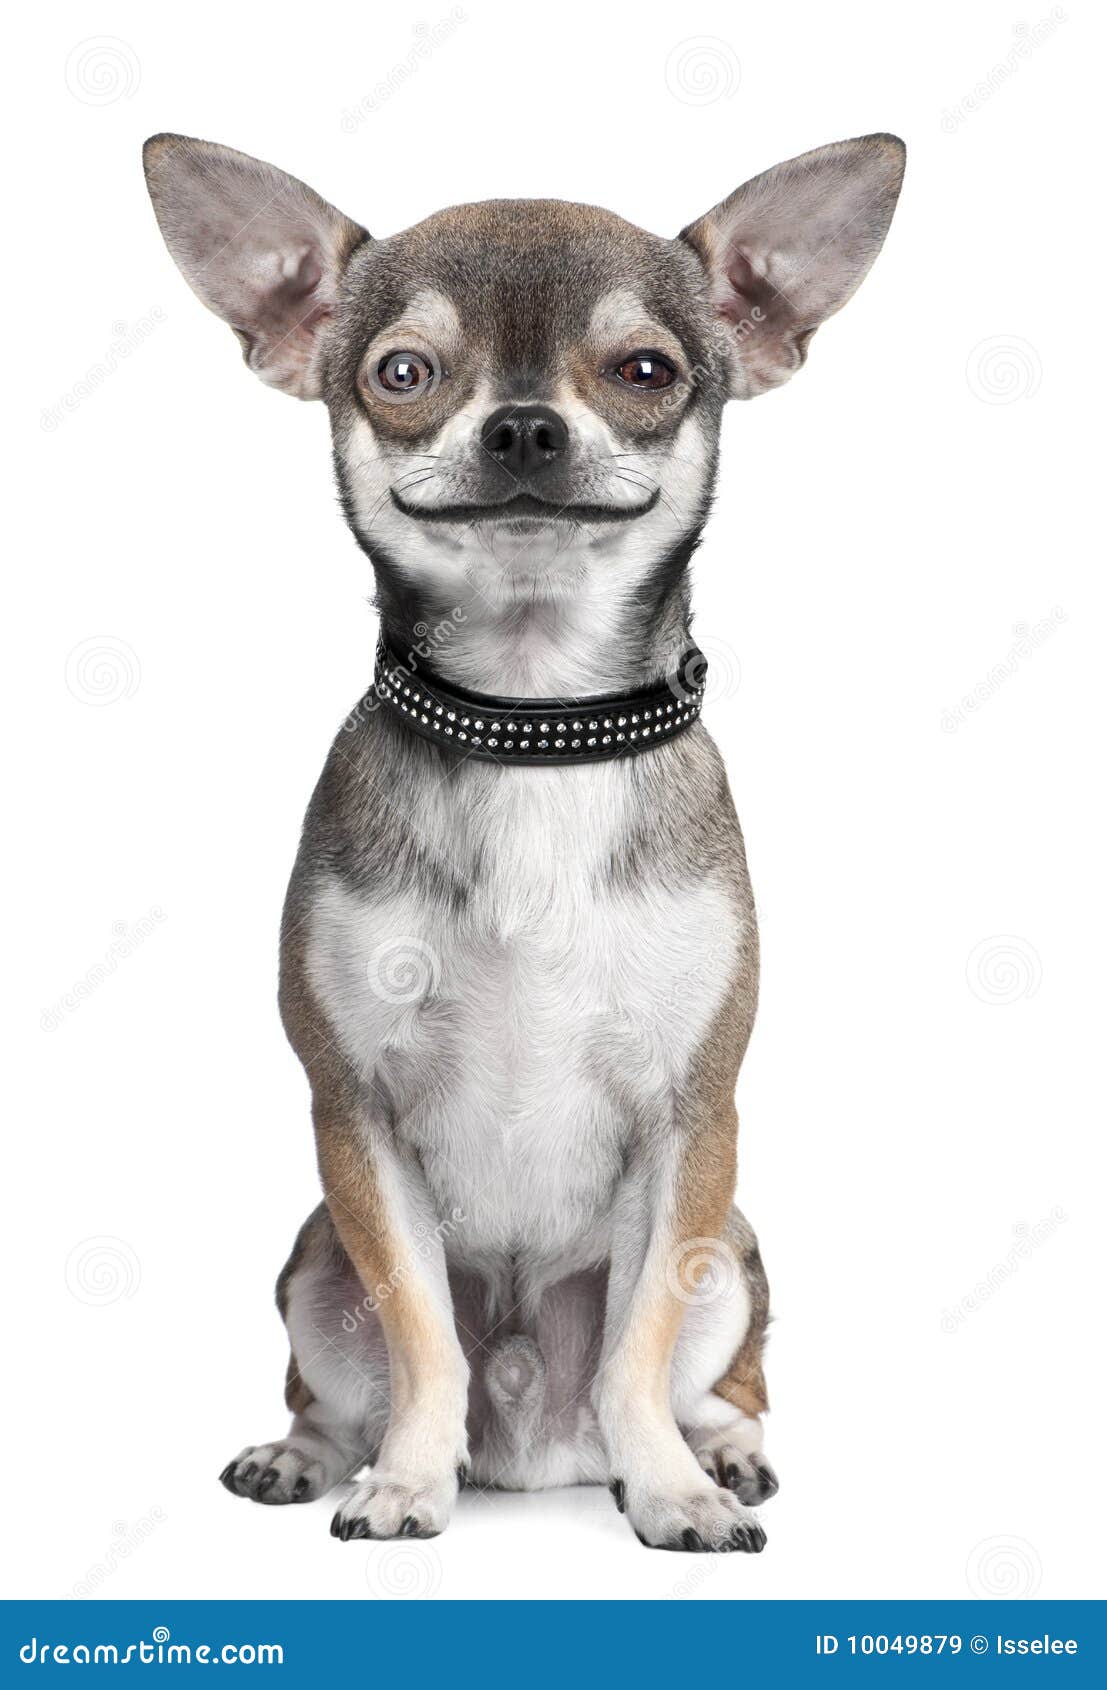 dog ( chihuahua ) looking at the camera, smiling